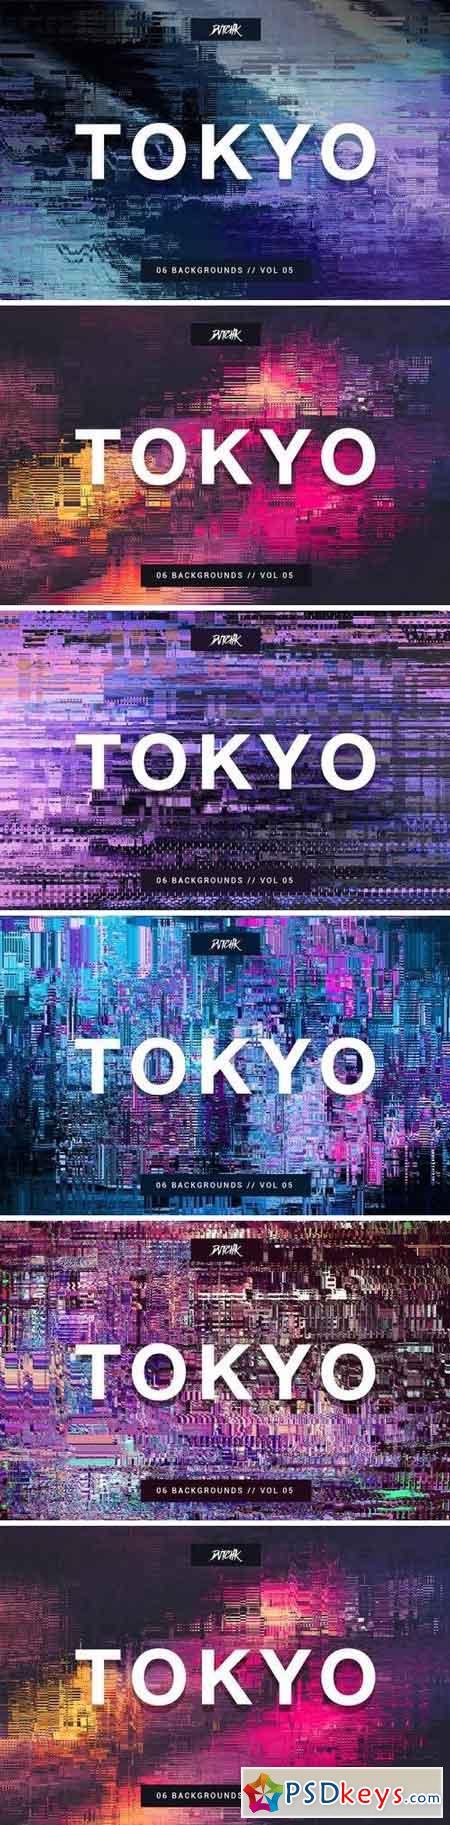 Tokyo City Glitch Backgrounds Vol. 05